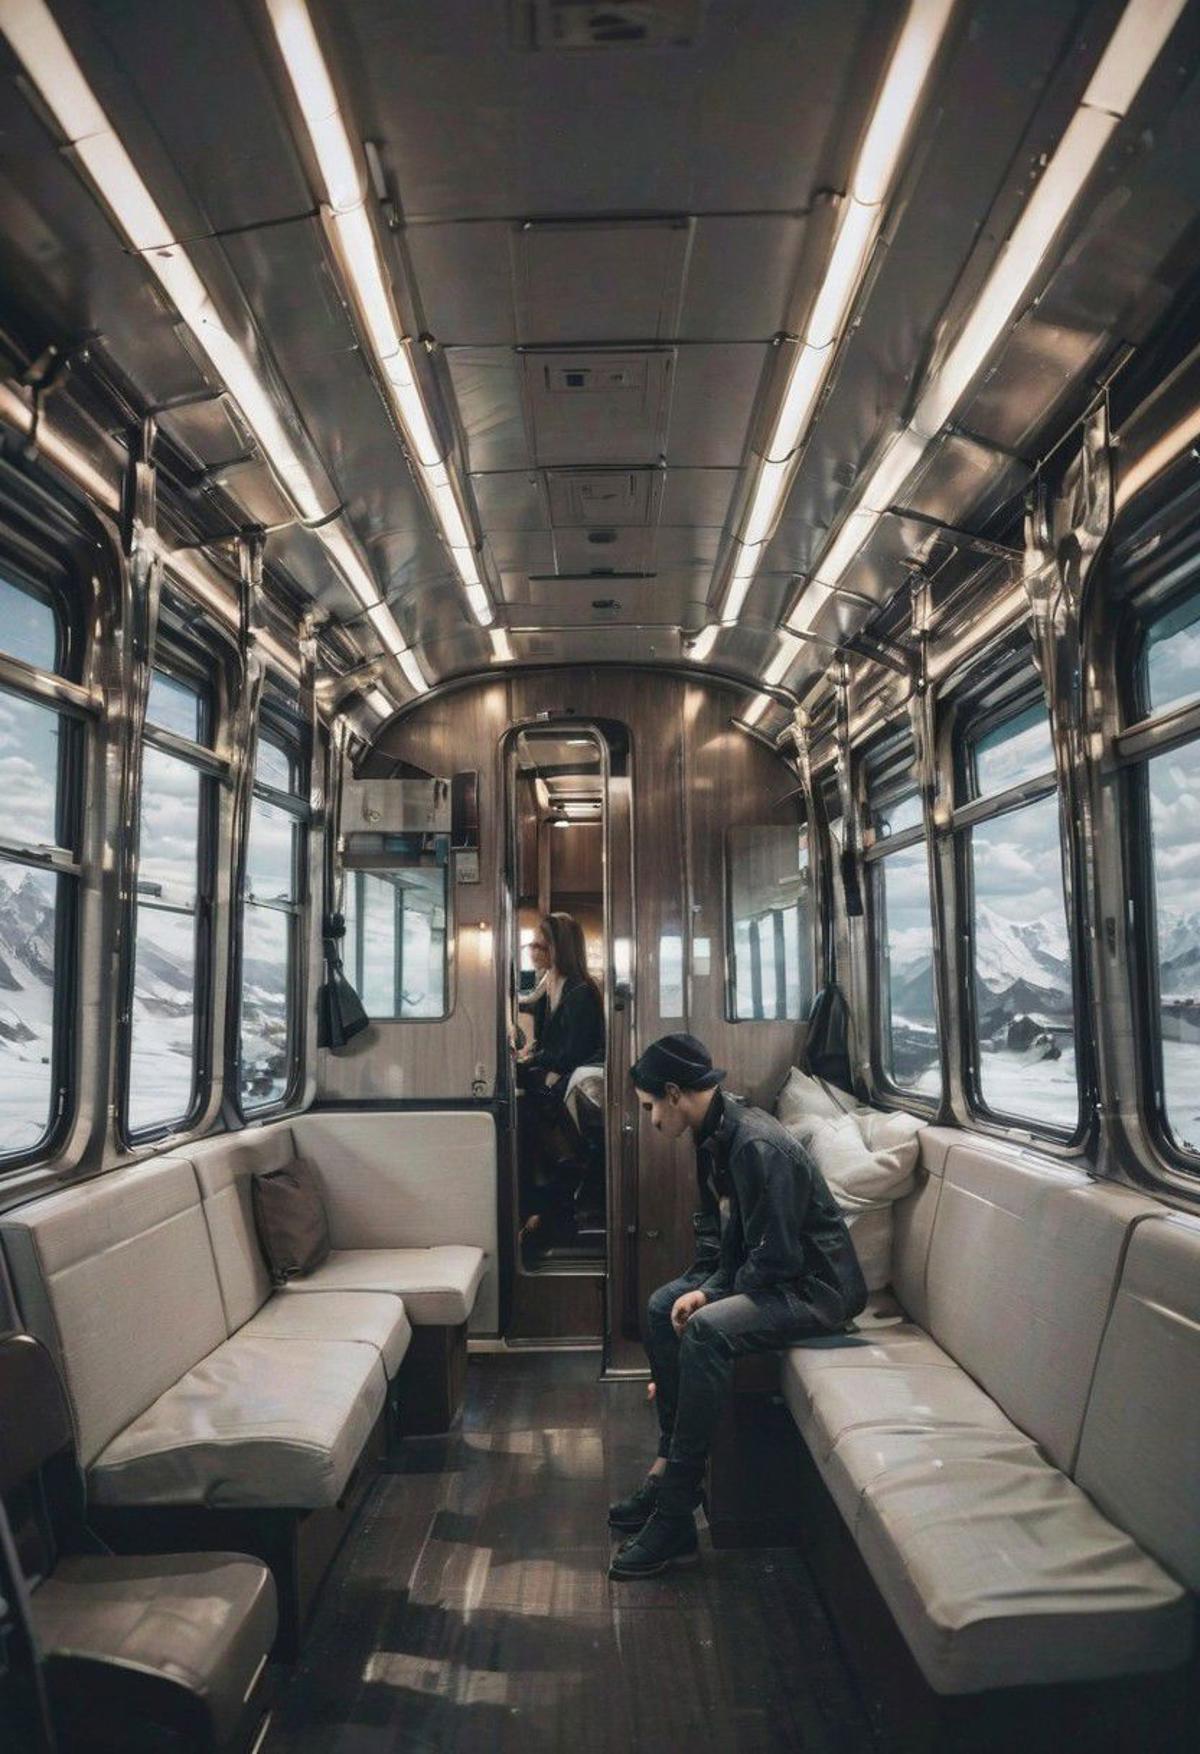 traincabin_XL image by zhengru0909